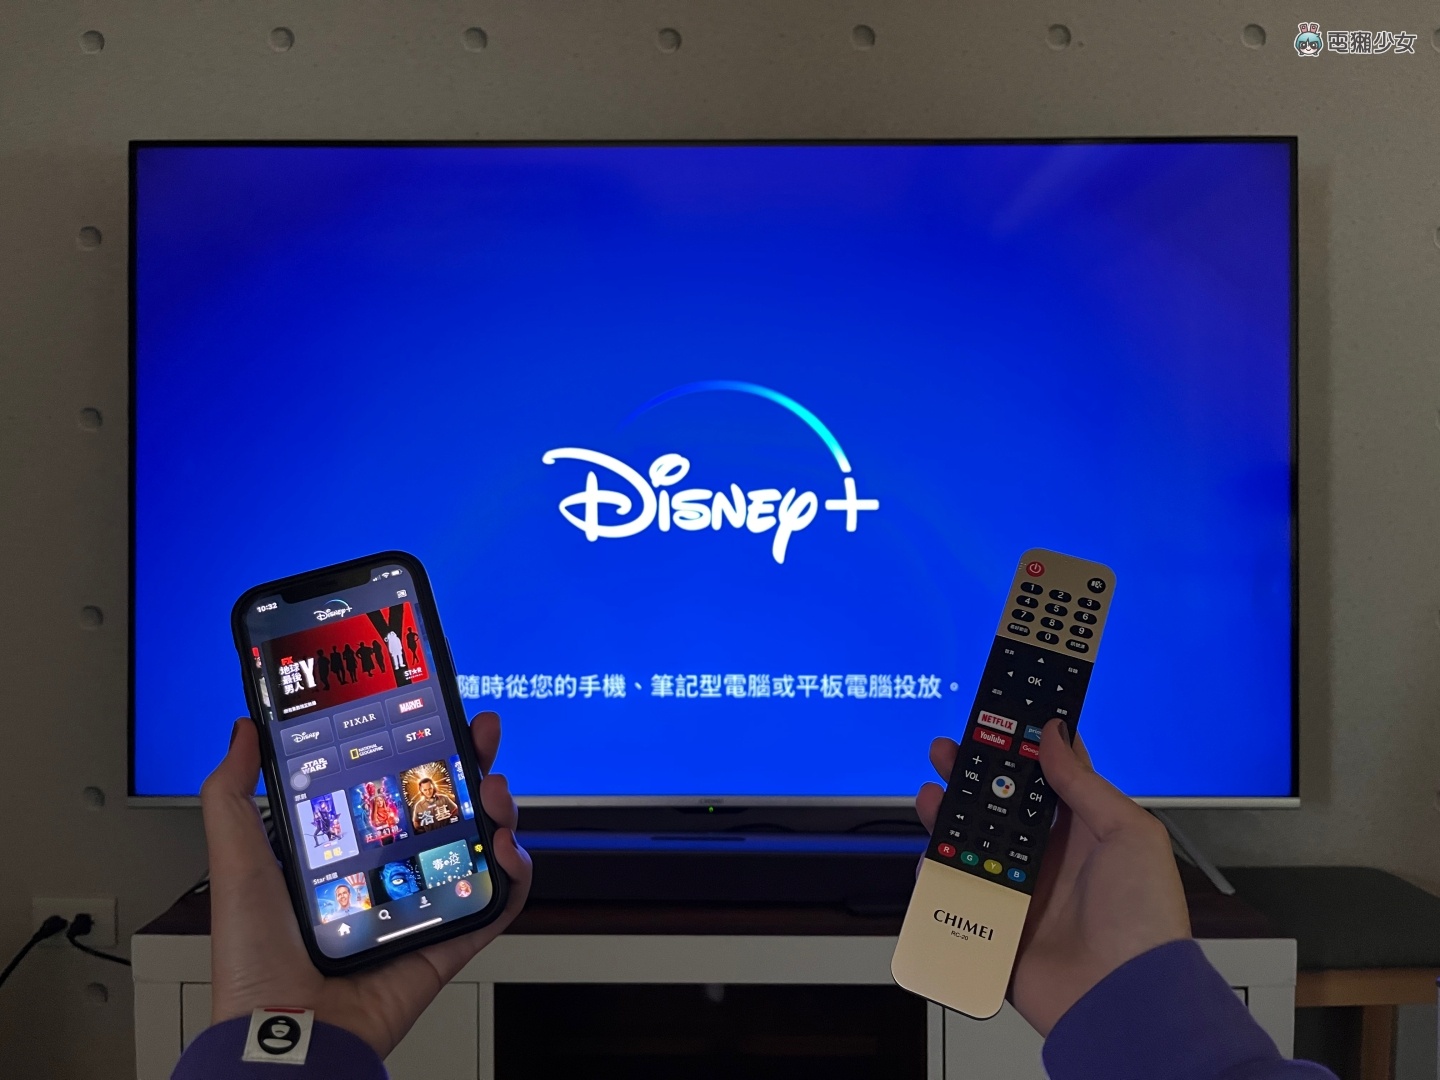 教學｜如何把 Disney+ 從手機投放到電視的大螢幕上？三步驟教你輕鬆操作